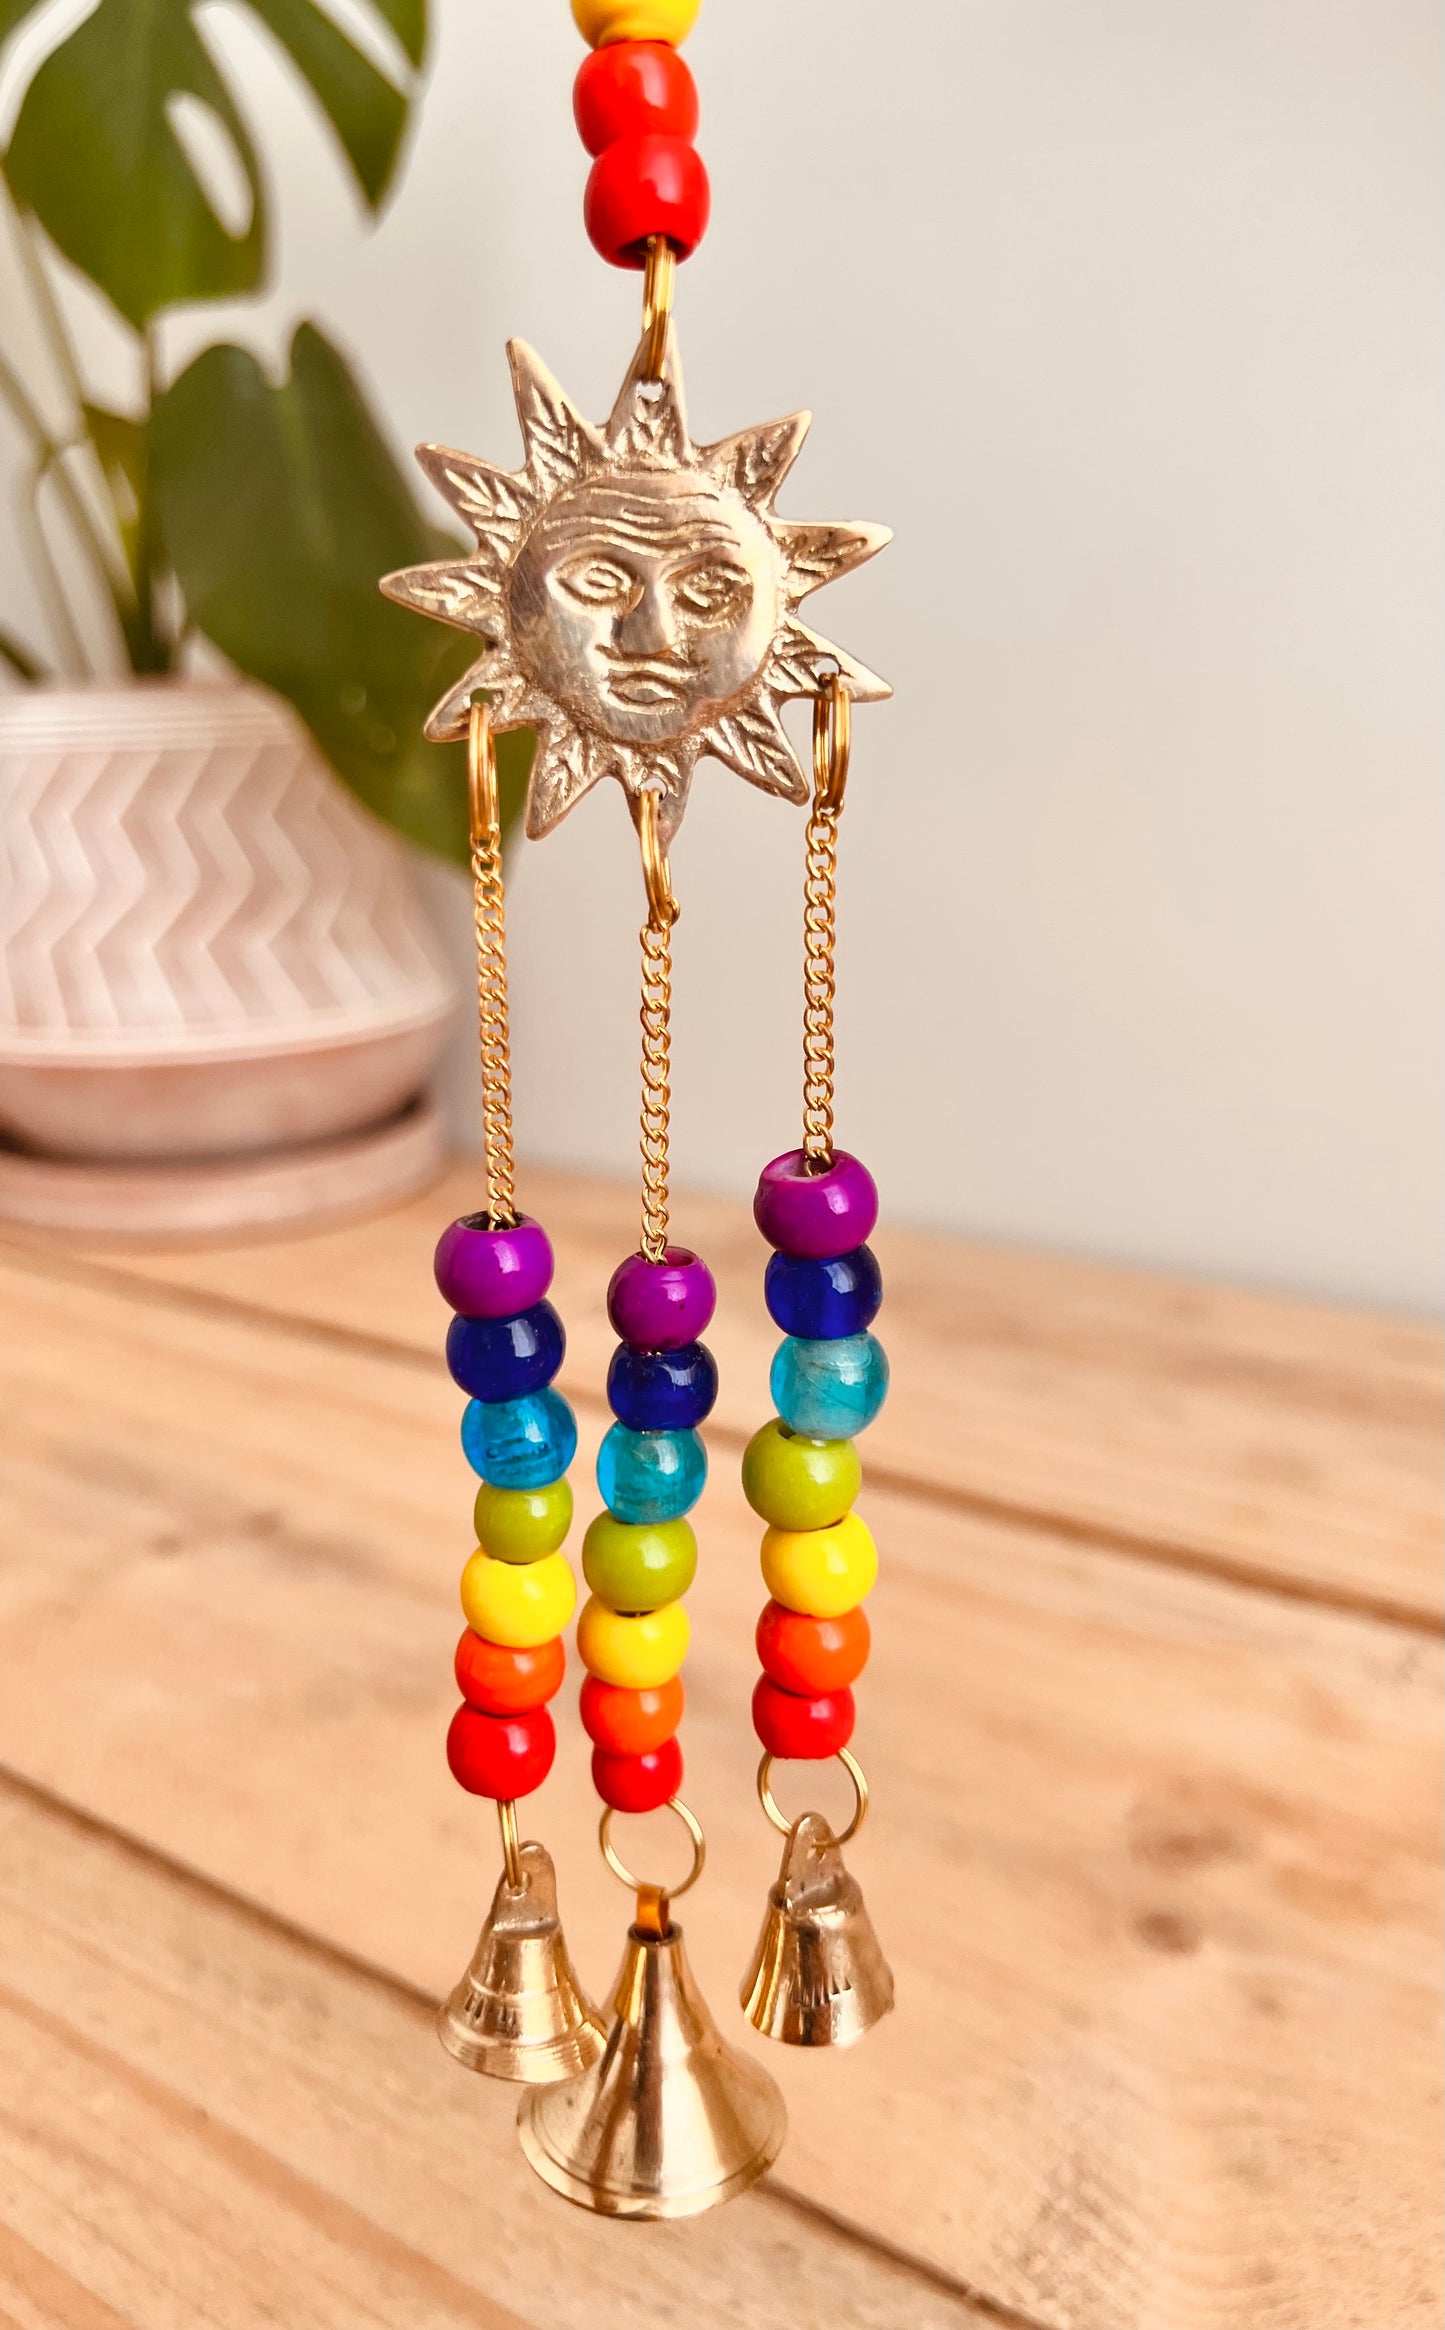 Handmade & Fair Trade Chakra Beads, Brass Sun Wind Chime, Hippie Indian Bells